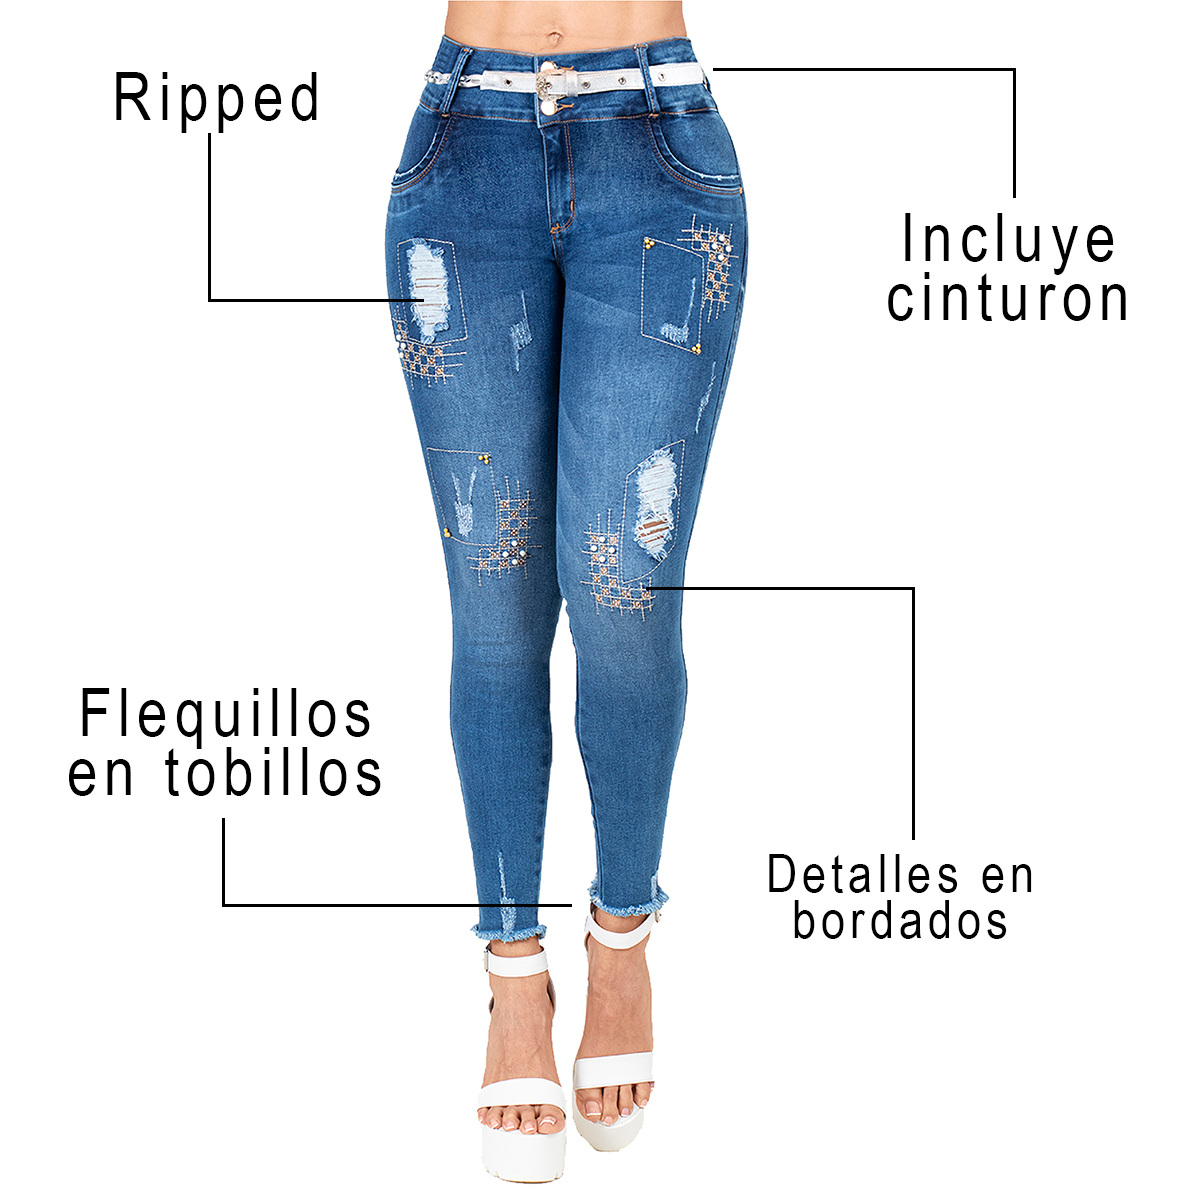 El jean colombiano bordado cuenta con un cinturón trenzado color blanco que complementará tu outfit. Realza tus curvas y brinda elevación de glúteos.